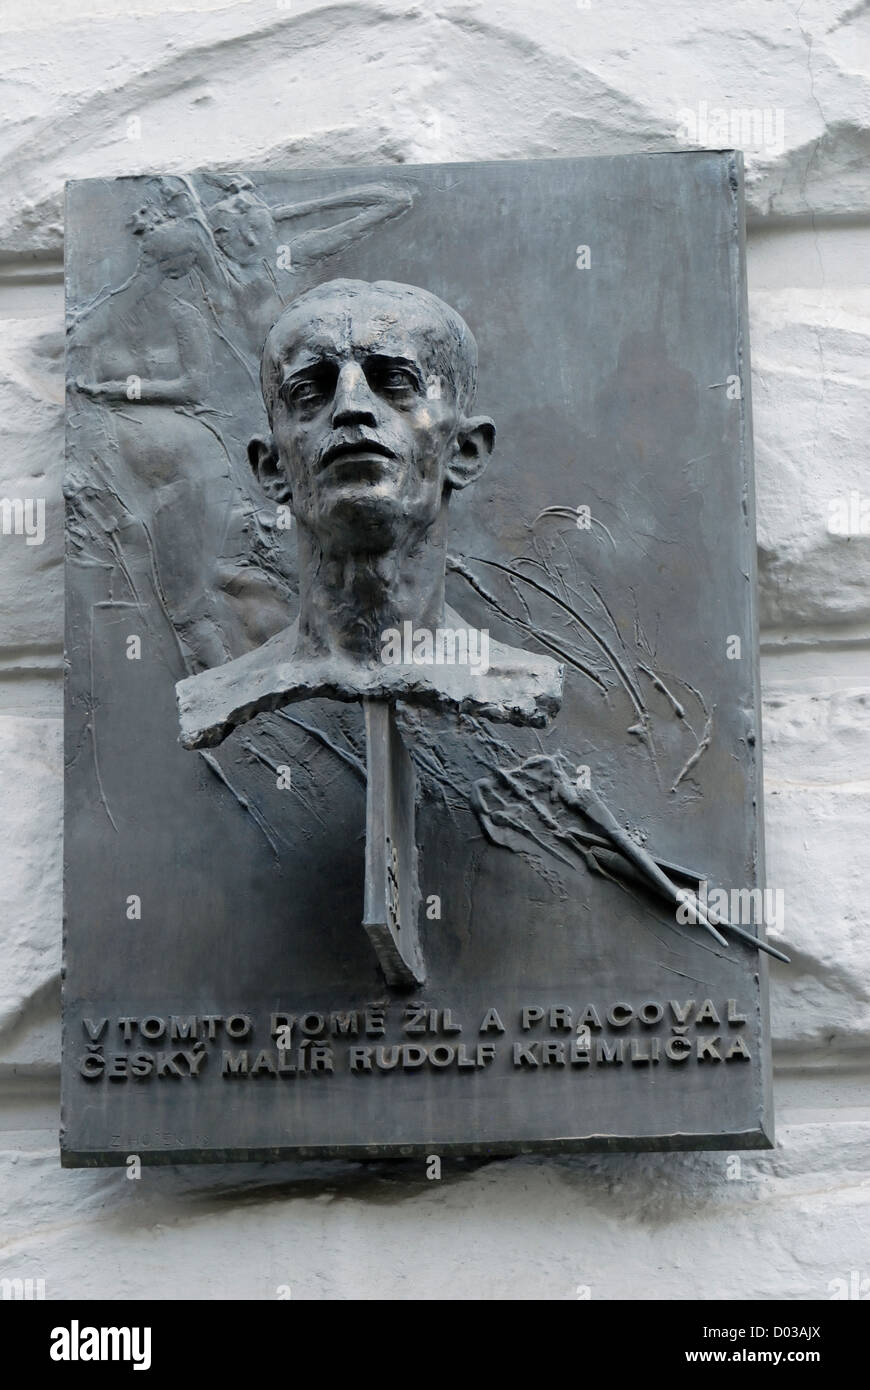 Prague, République tchèque. Une plaque commémorative à Rudolf Kremlicka - Parizska, peintre tchèque, a vécu et travaillé ici Banque D'Images